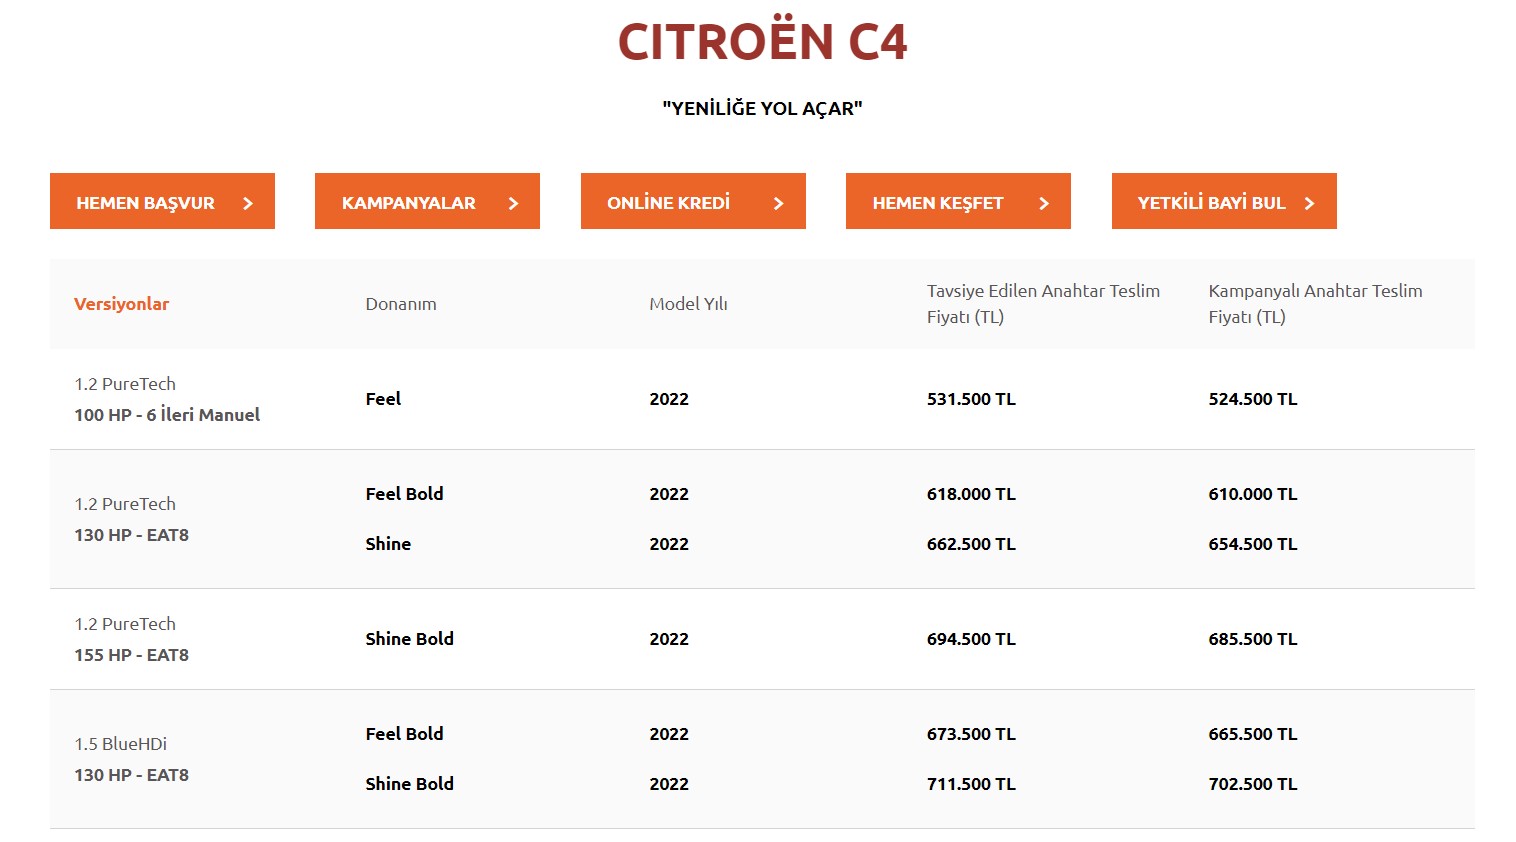 Citroen 2022 Mayıs fiyat listesini açıkladı: İşte yeni fiyatlar!